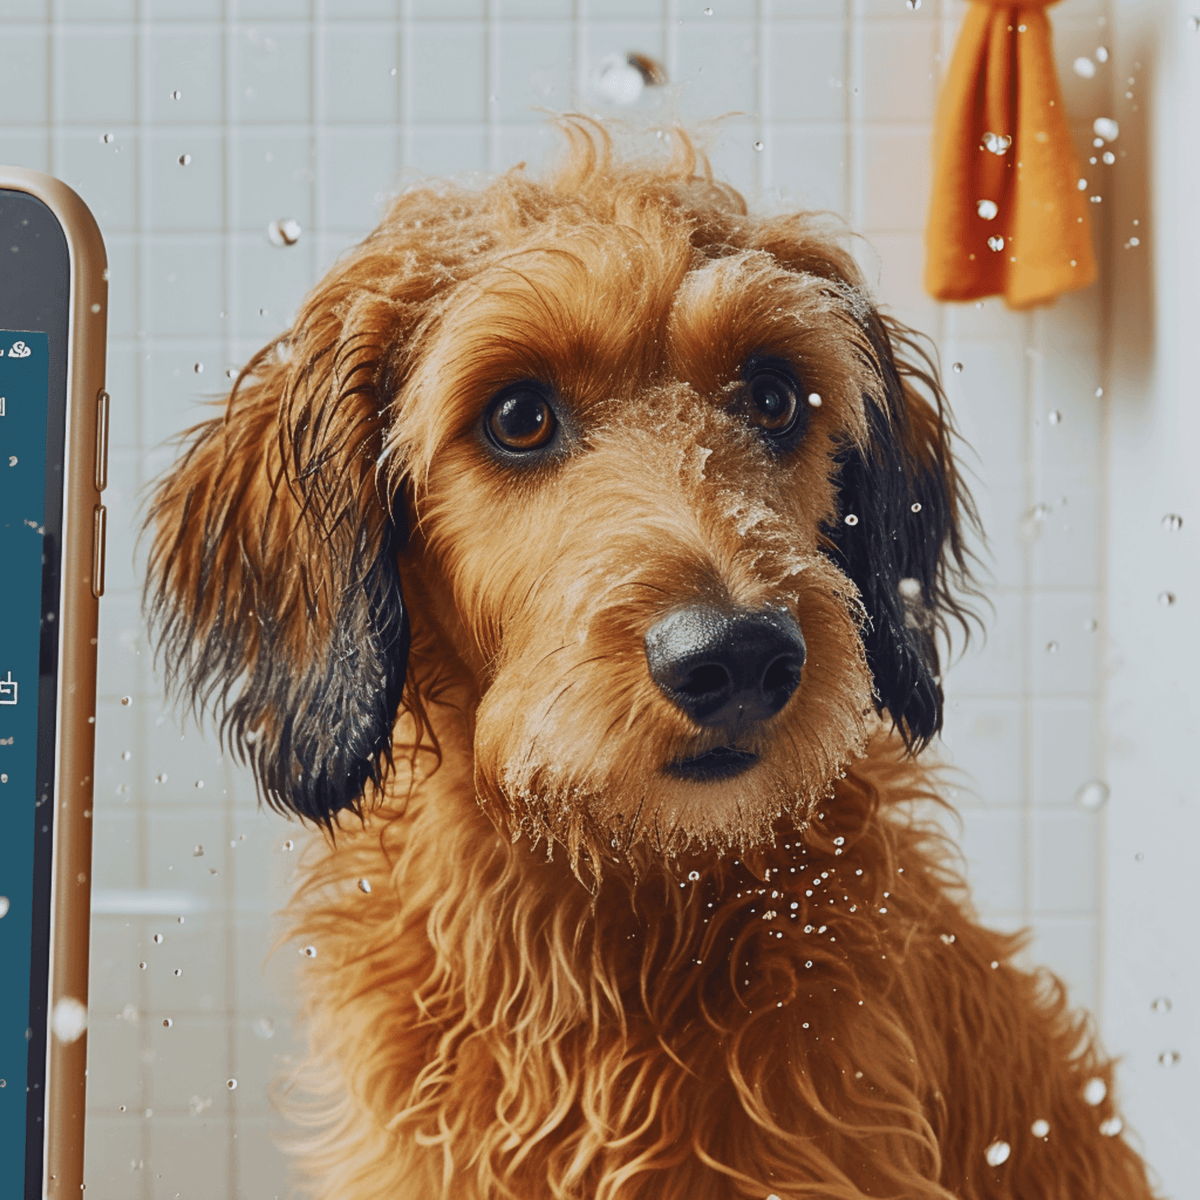 Cute Small Dog in a Bath with Shampoo